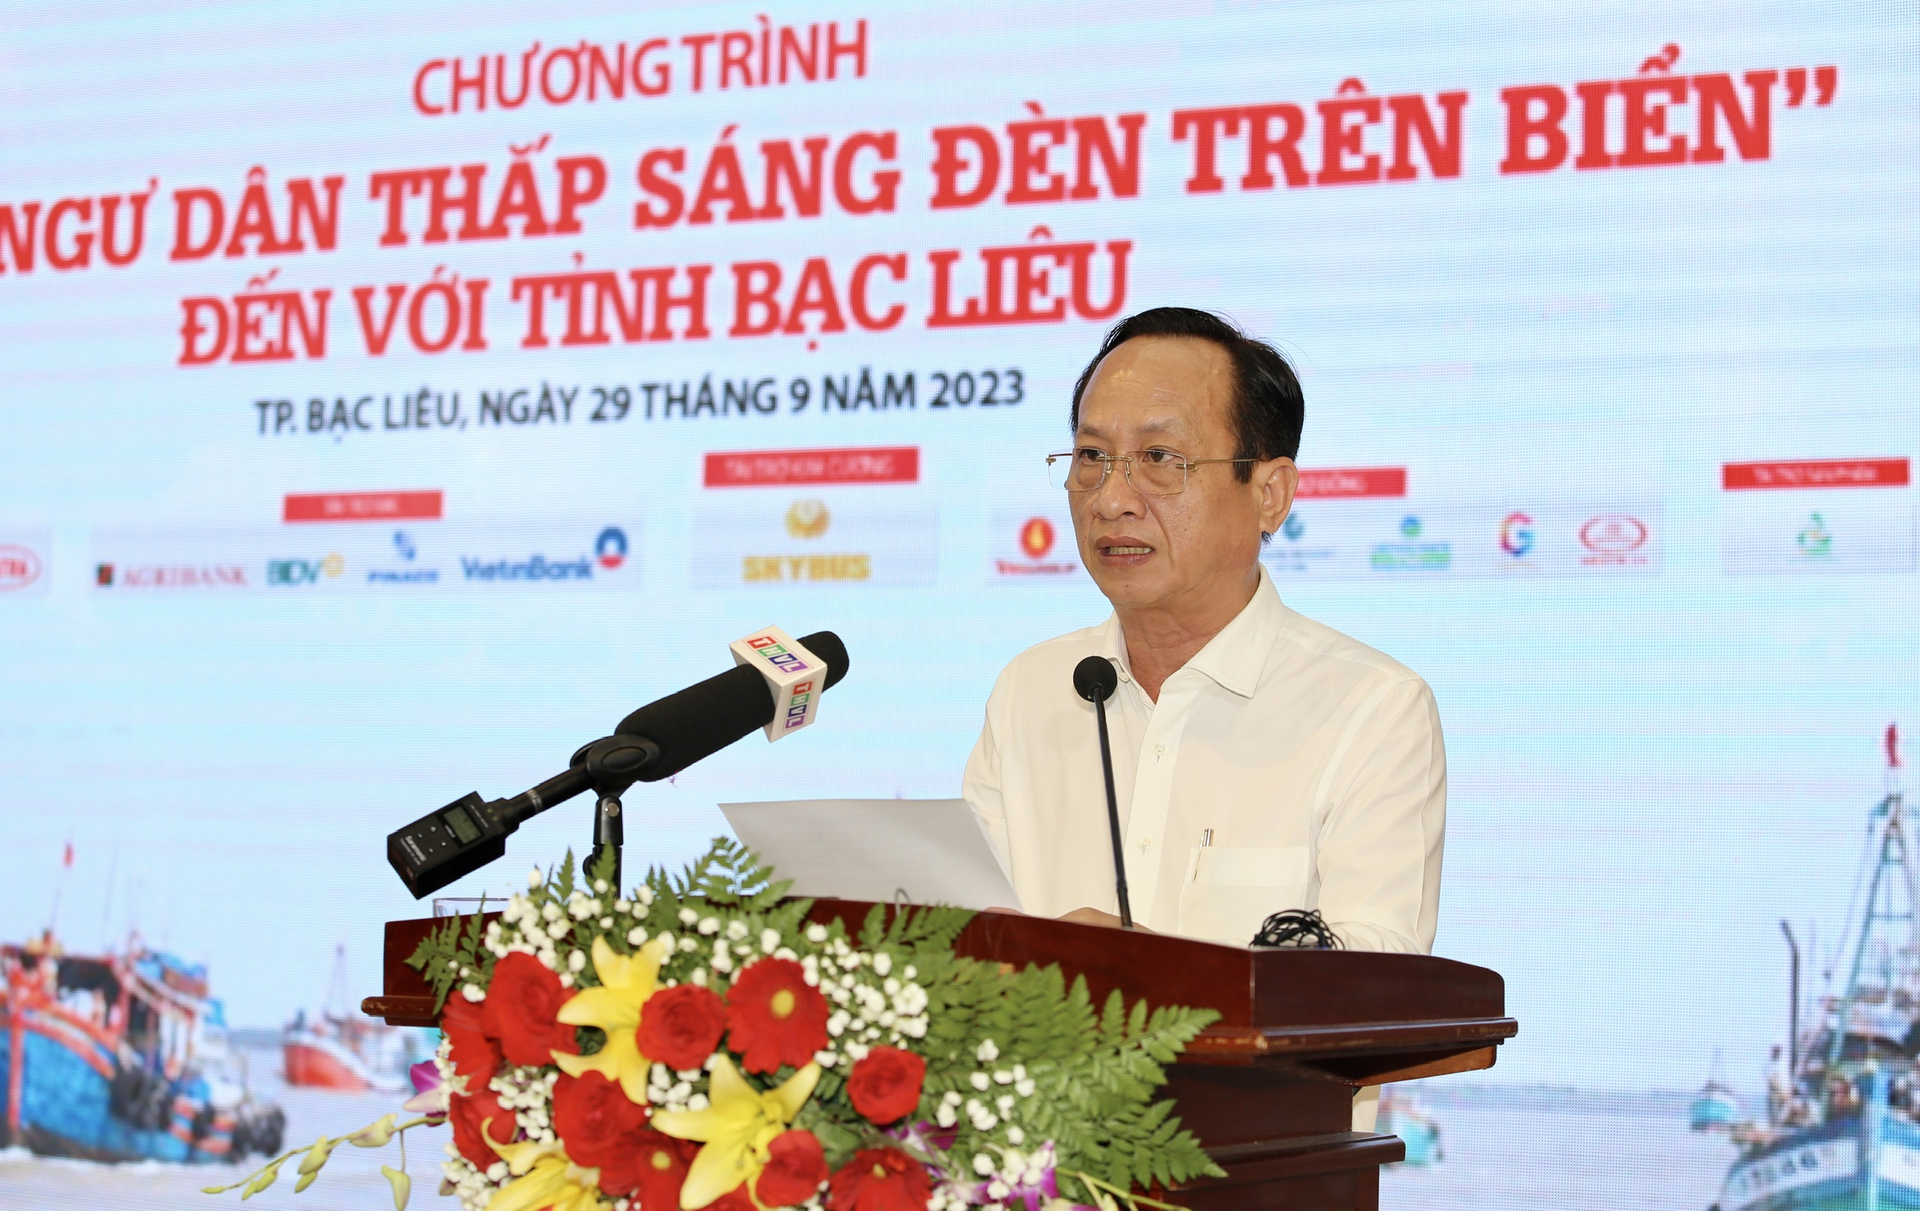 Ông Phạm Văn Thiều, Chủ tịch UBND tỉnh Bạc Liêu chia sẻ, chương trình có ý nghĩa sâu sắc, góp phần nâng cao hiệu quả hoạt động tuyên truyền chống khai thác IUU. Ảnh: Trọng Linh.